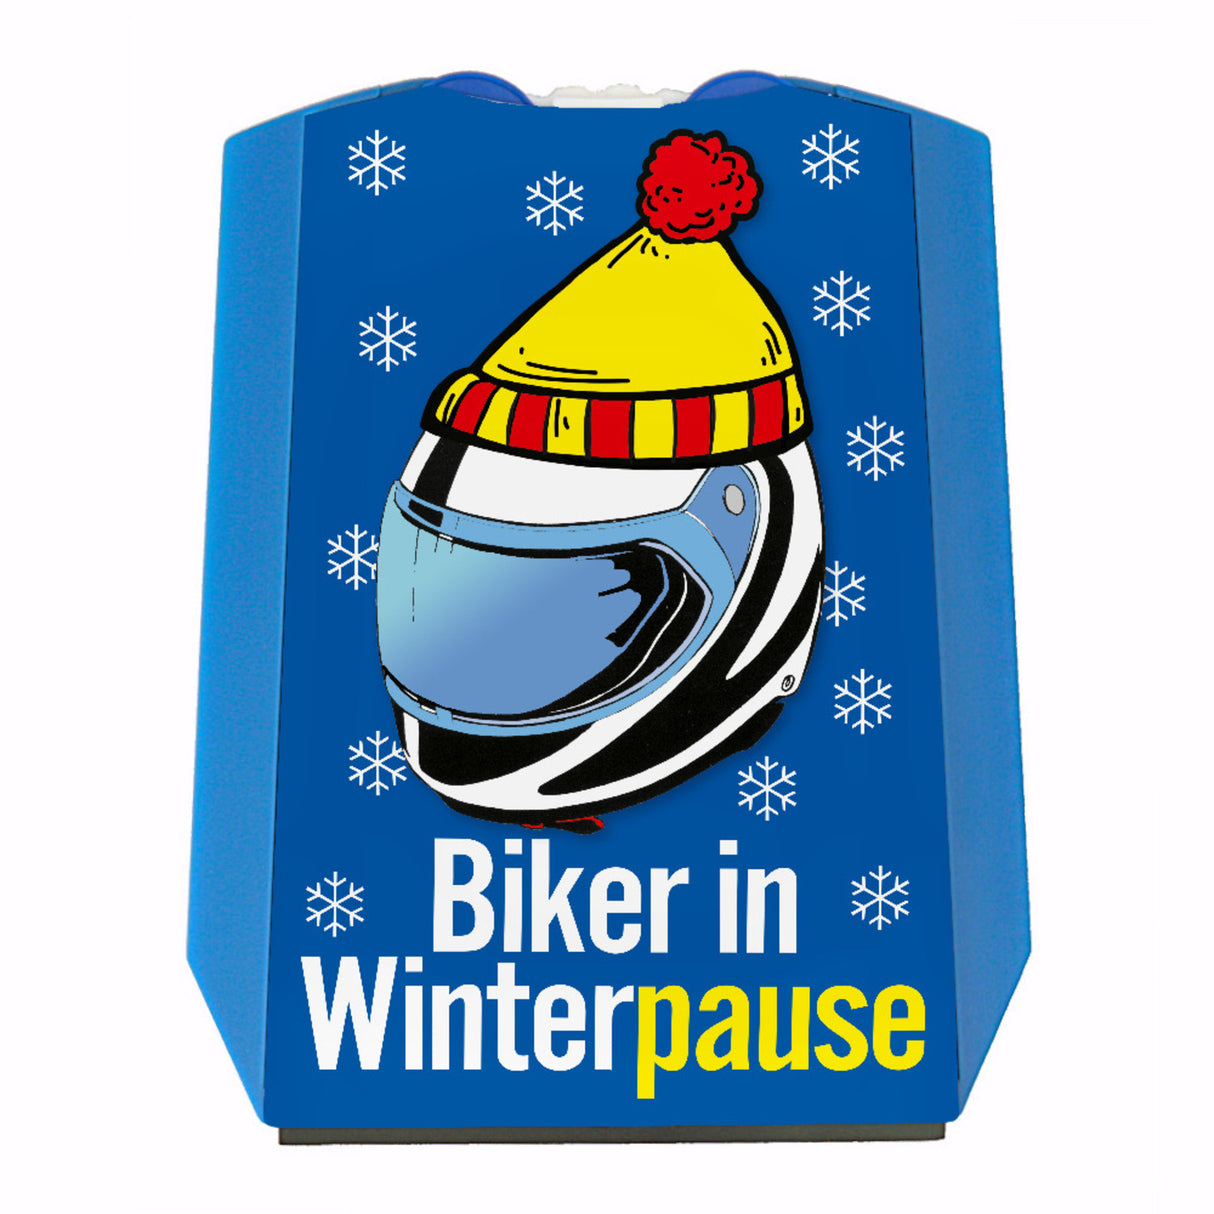 Parkscheibe Biker in Winterpause - Jetzt kaufen und sparen